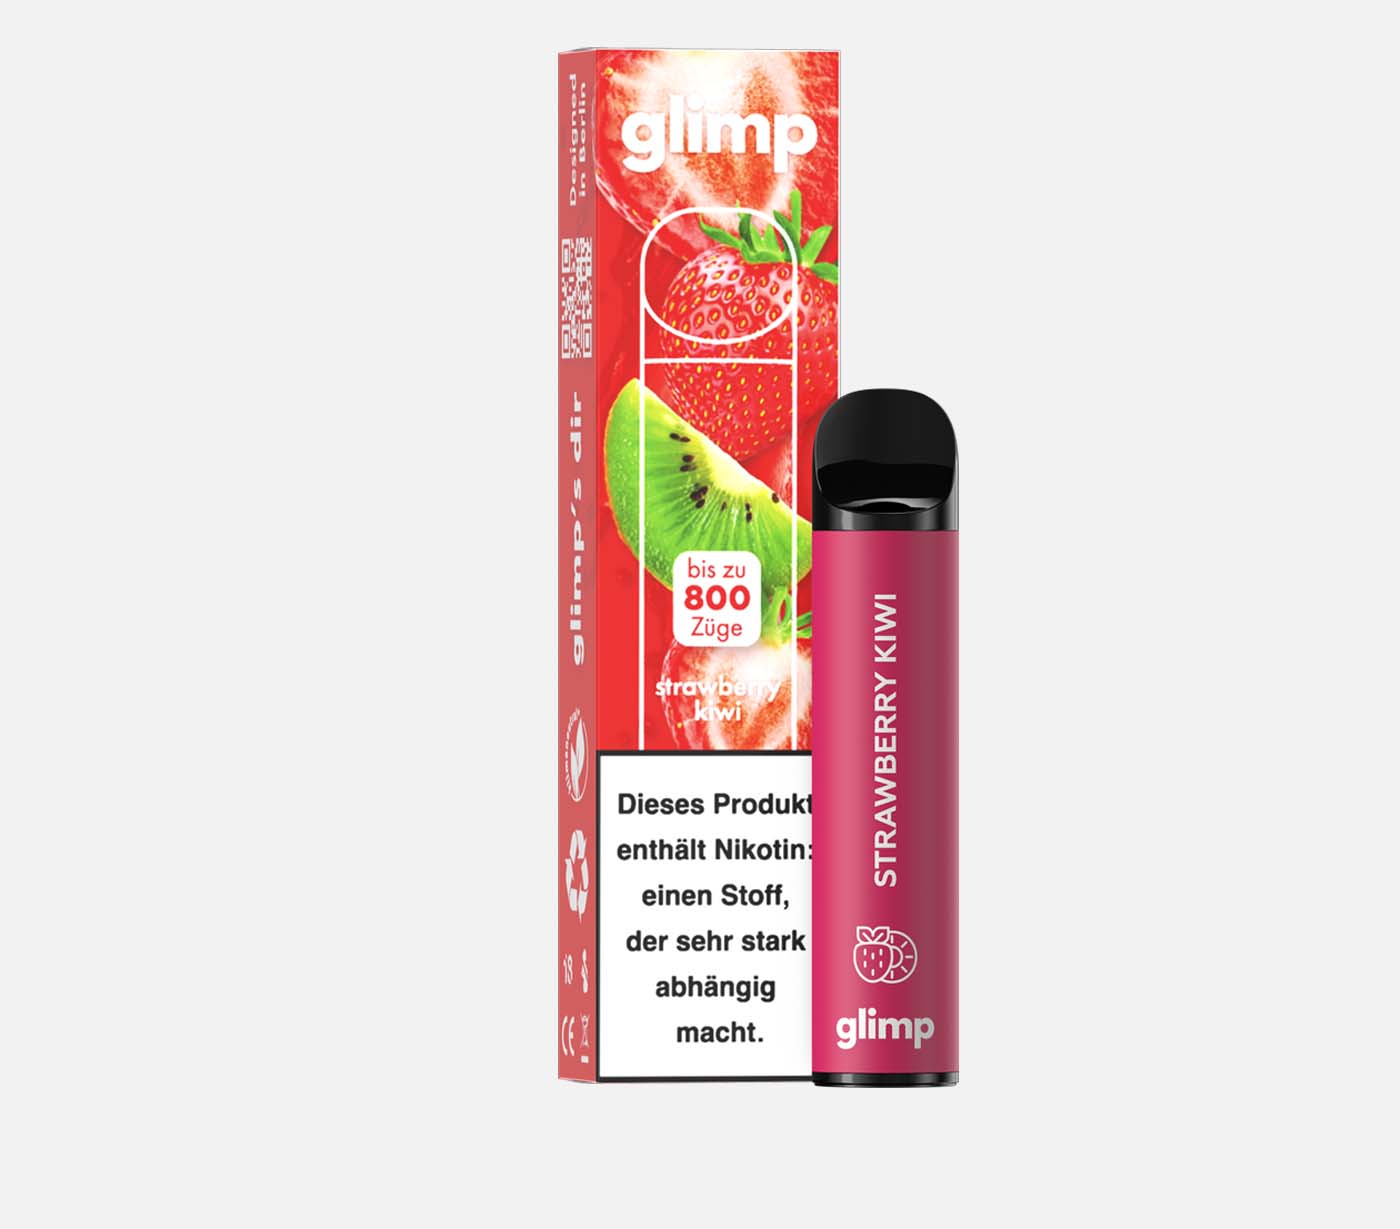 GLIMP 800 strawberry kiwi